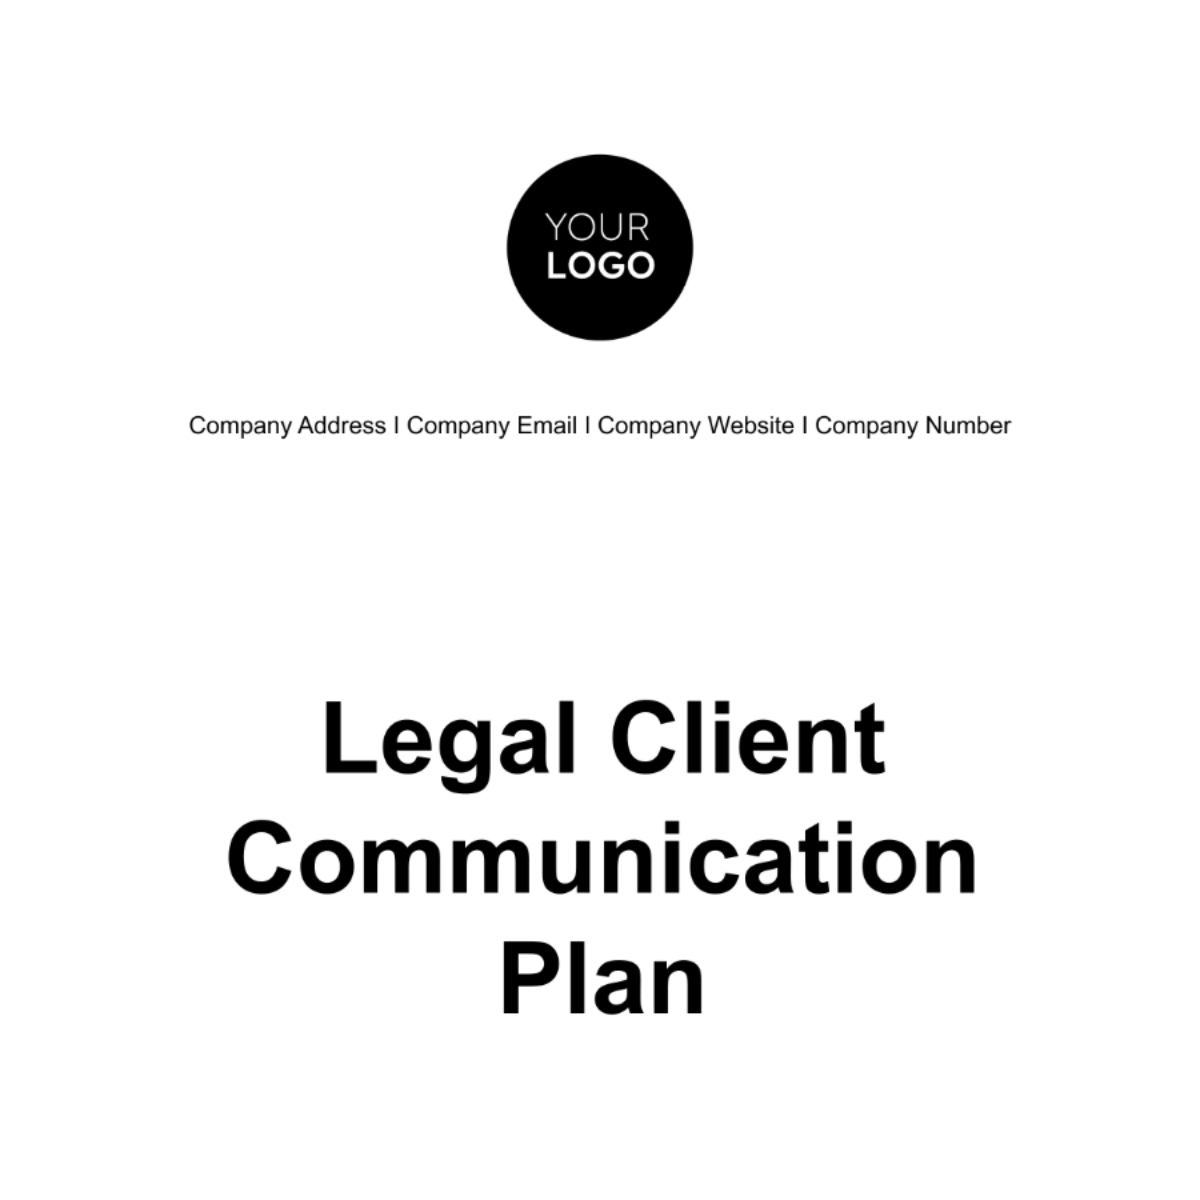 Legal Client Communication Plan Template